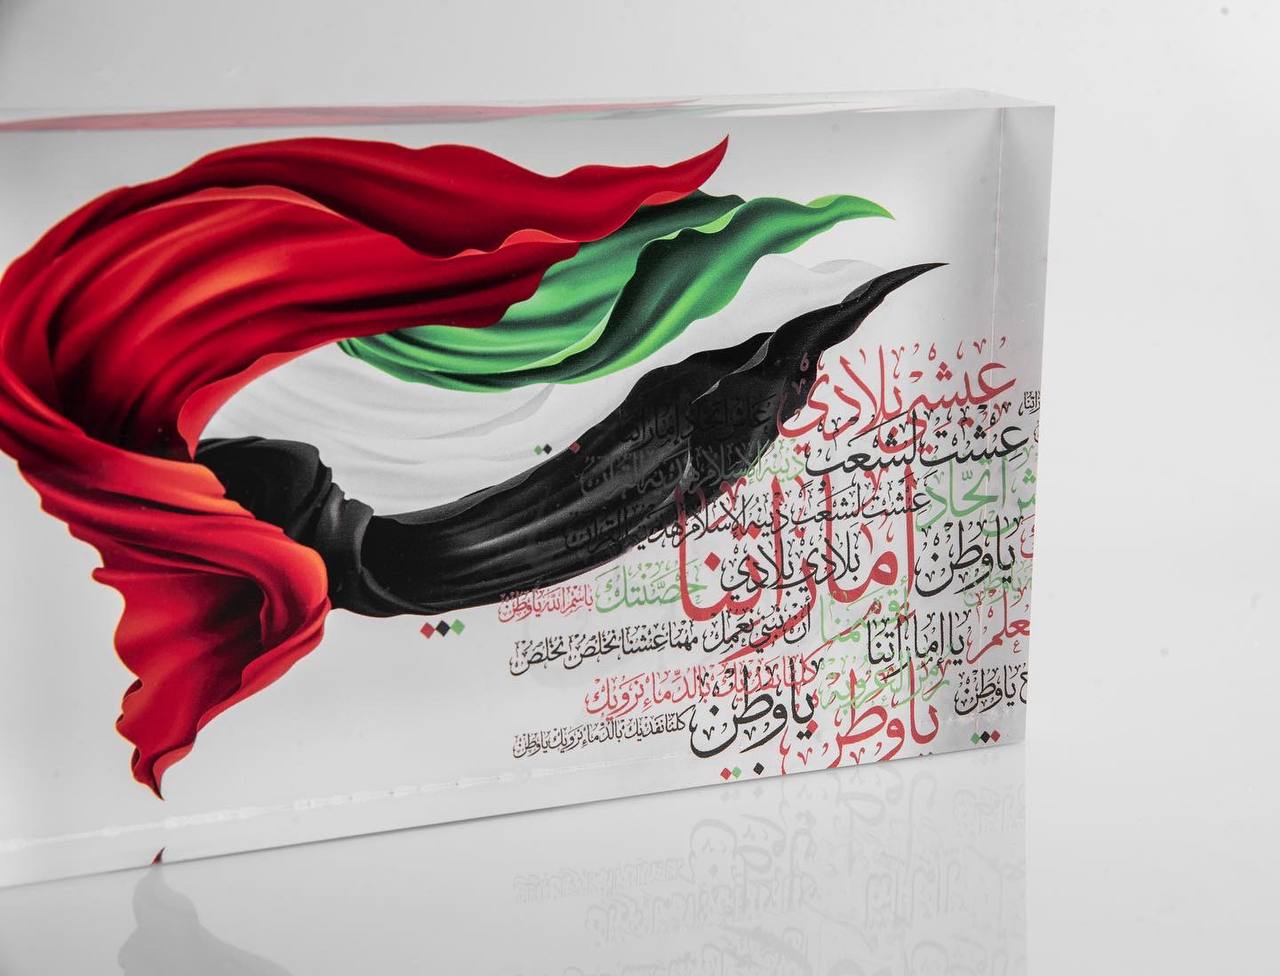 ROVATTI Acrylic Stand 2022 UAE Flag Day